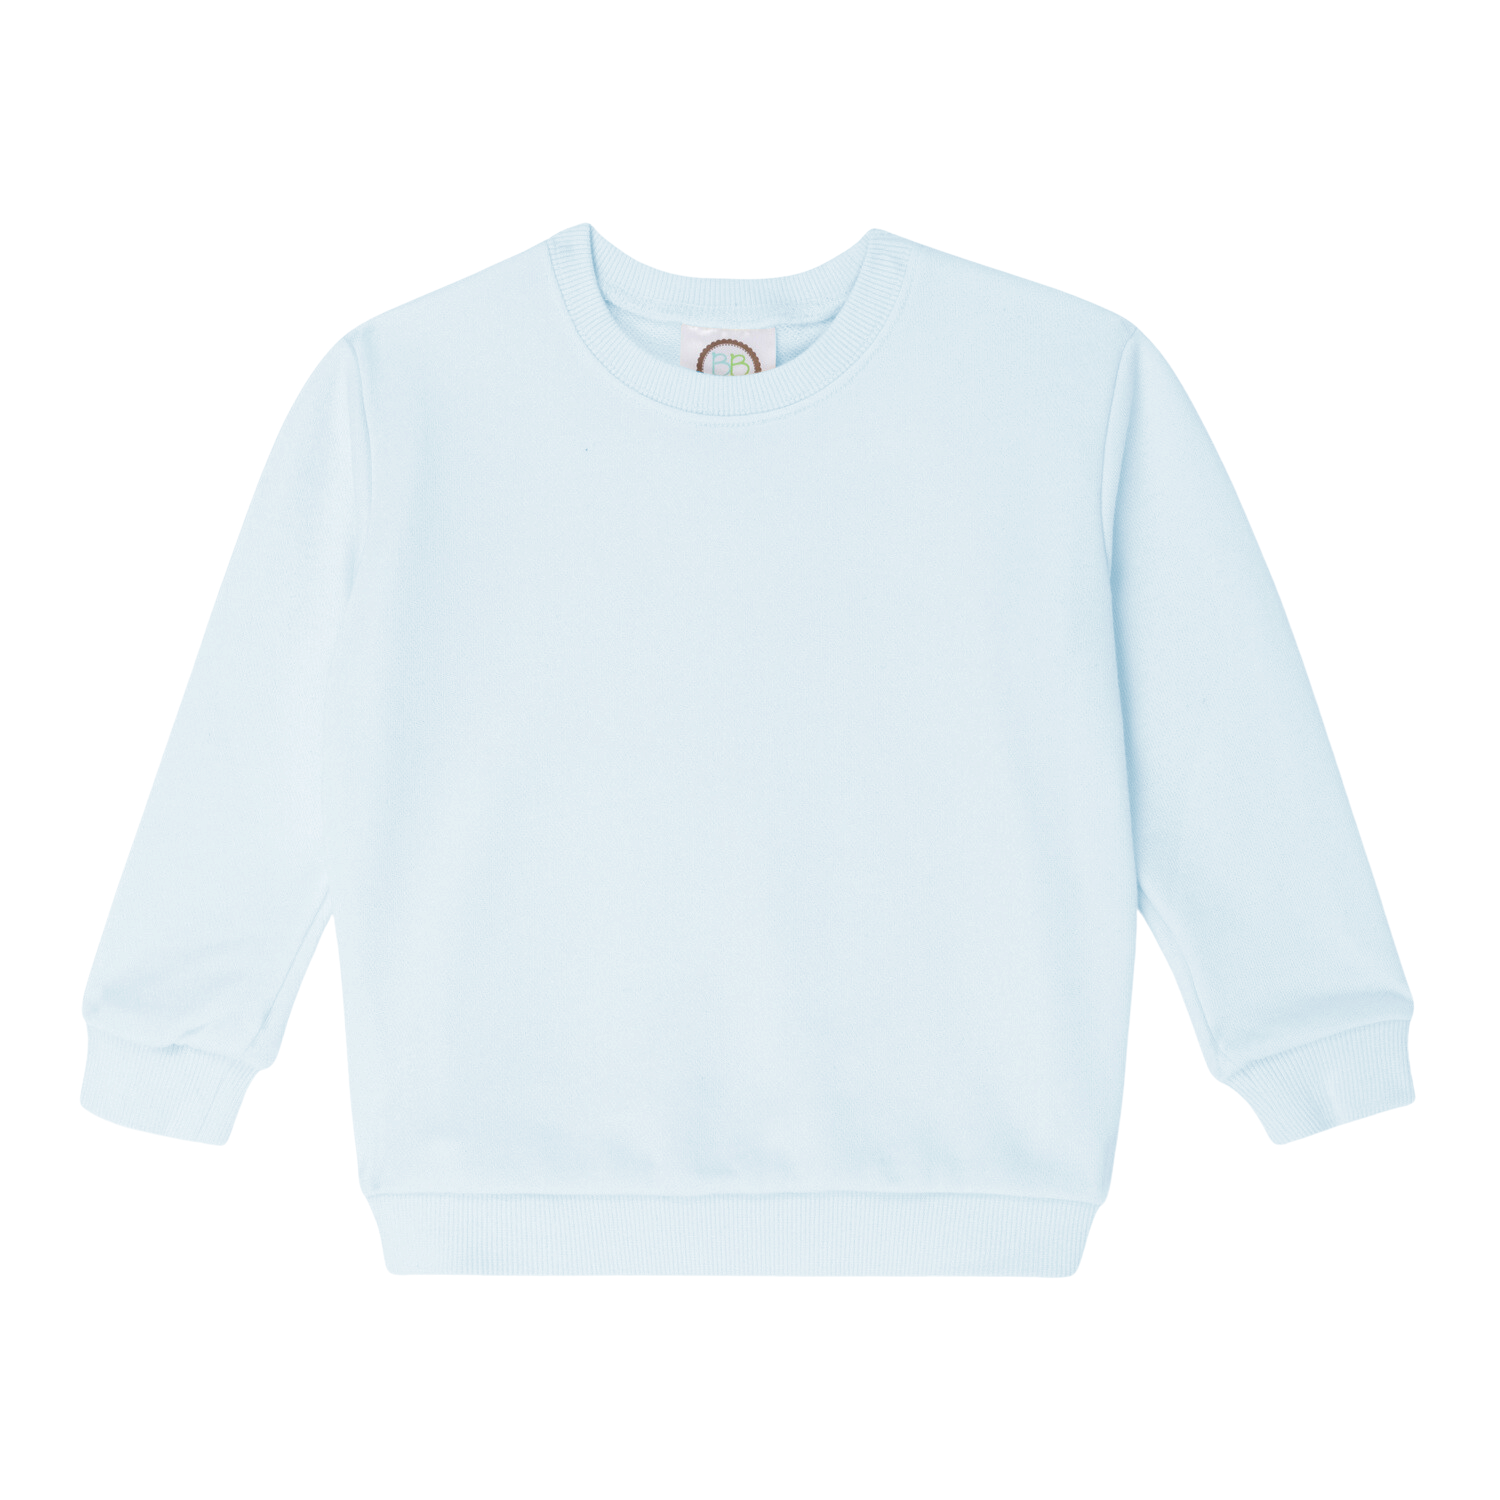 Infant Sweatshirt, Color/Size: Light Blue, 12 Month